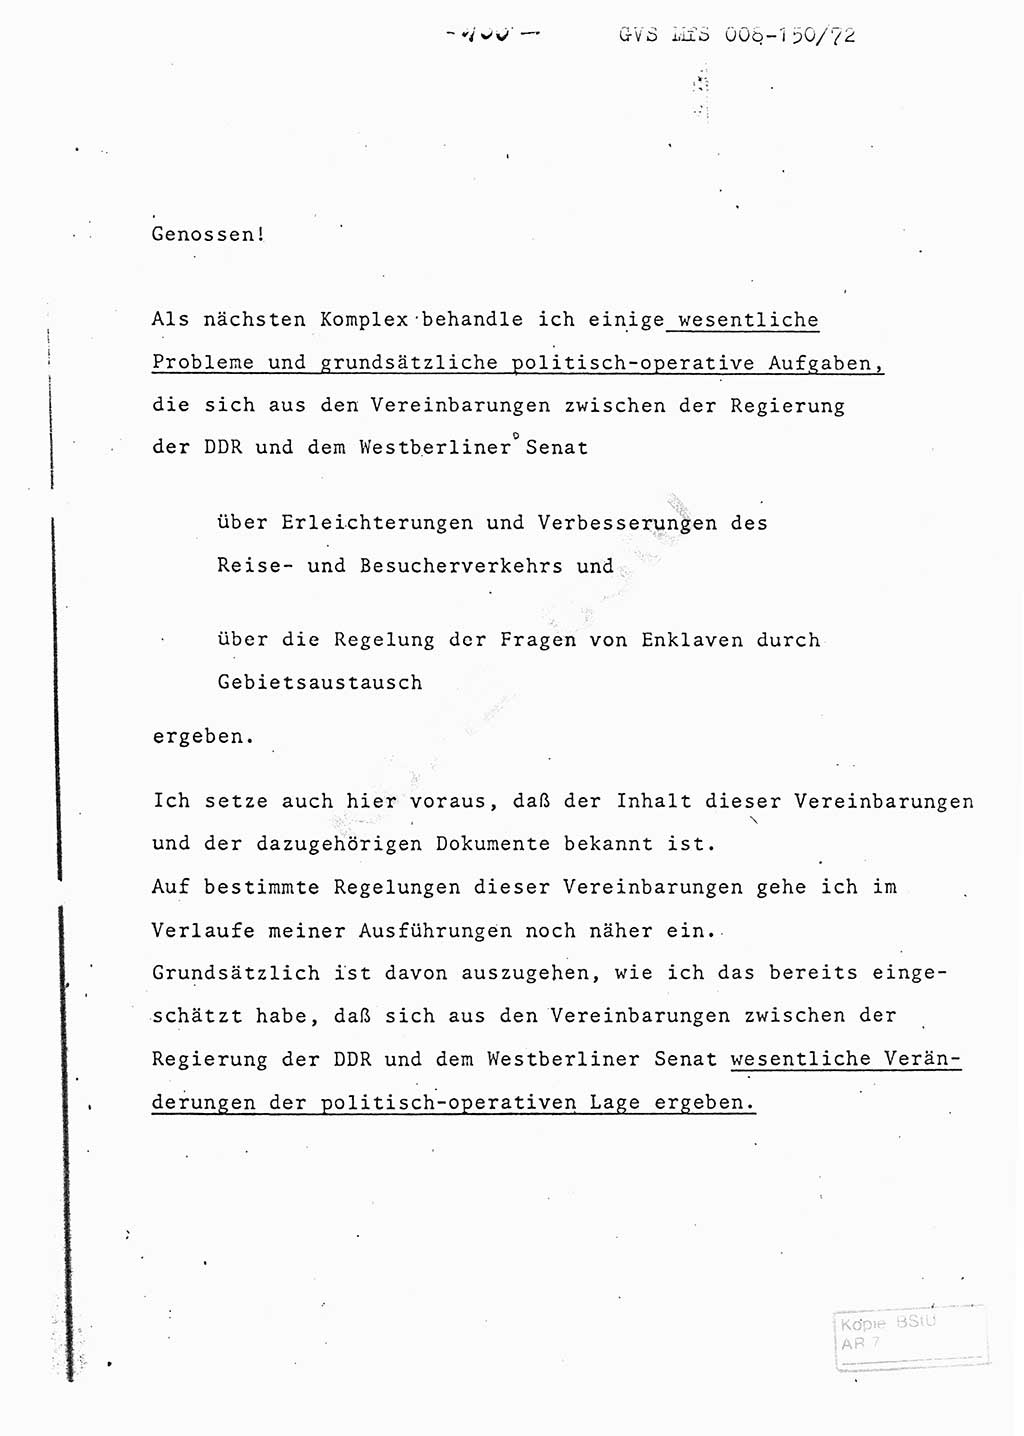 Referat (Entwurf) des Genossen Minister (Generaloberst Erich Mielke) auf der Dienstkonferenz 1972, Ministerium für Staatssicherheit (MfS) [Deutsche Demokratische Republik (DDR)], Der Minister, Geheime Verschlußsache (GVS) 008-150/72, Berlin 25.2.1972, Seite 166 (Ref. Entw. DK MfS DDR Min. GVS 008-150/72 1972, S. 166)